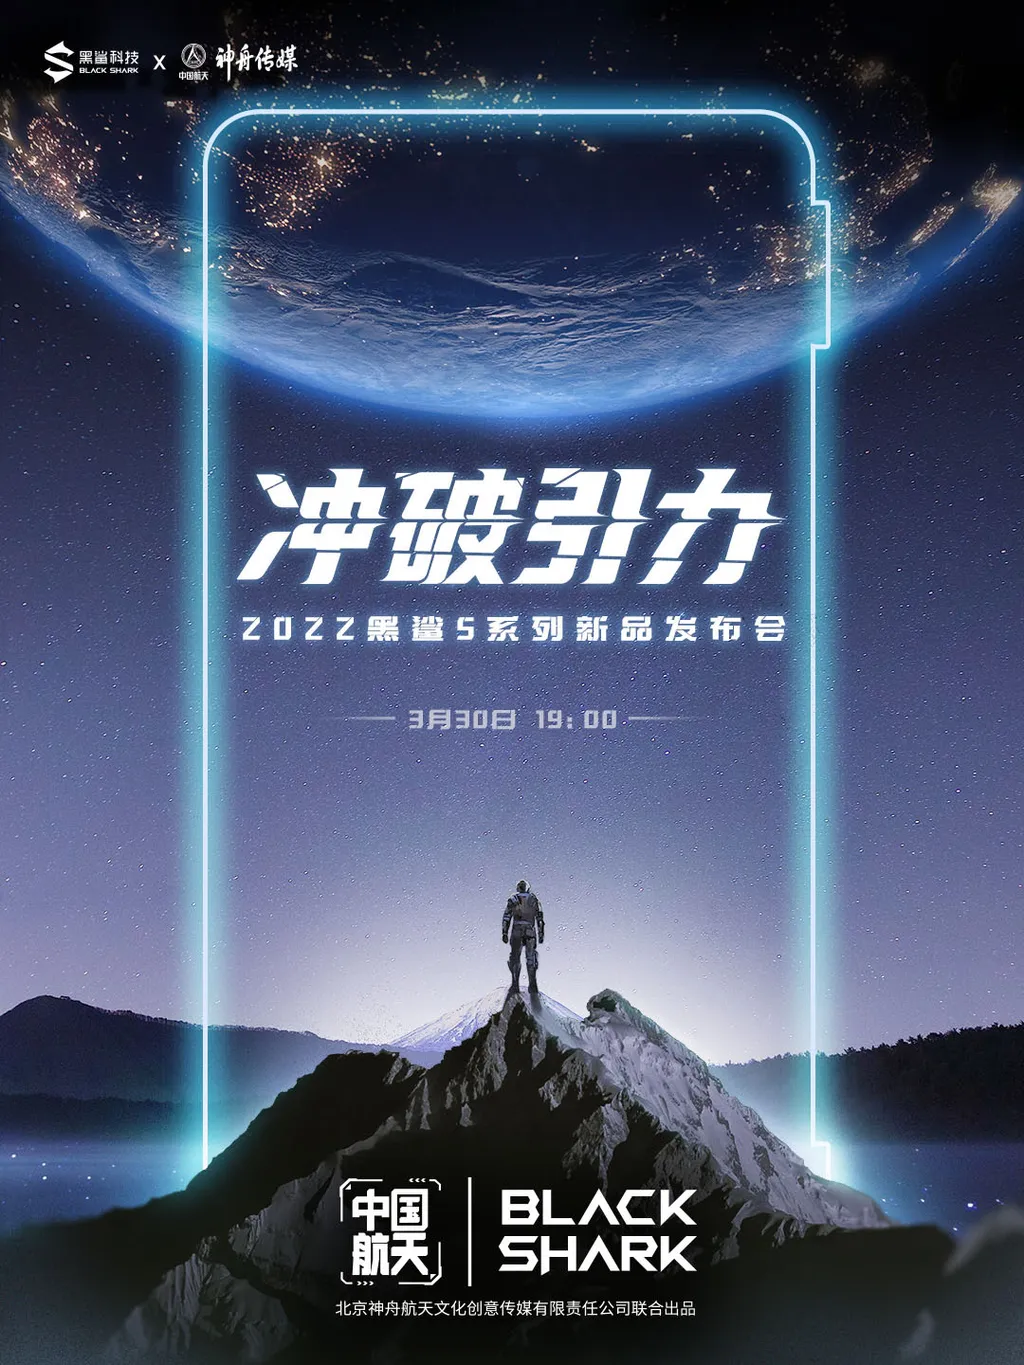 Arte promocional do Black Shark 5 Pro China Aerospace Edition reforça o anúncio no dia 30 de março (Imagem: Reprodução/Weibo)